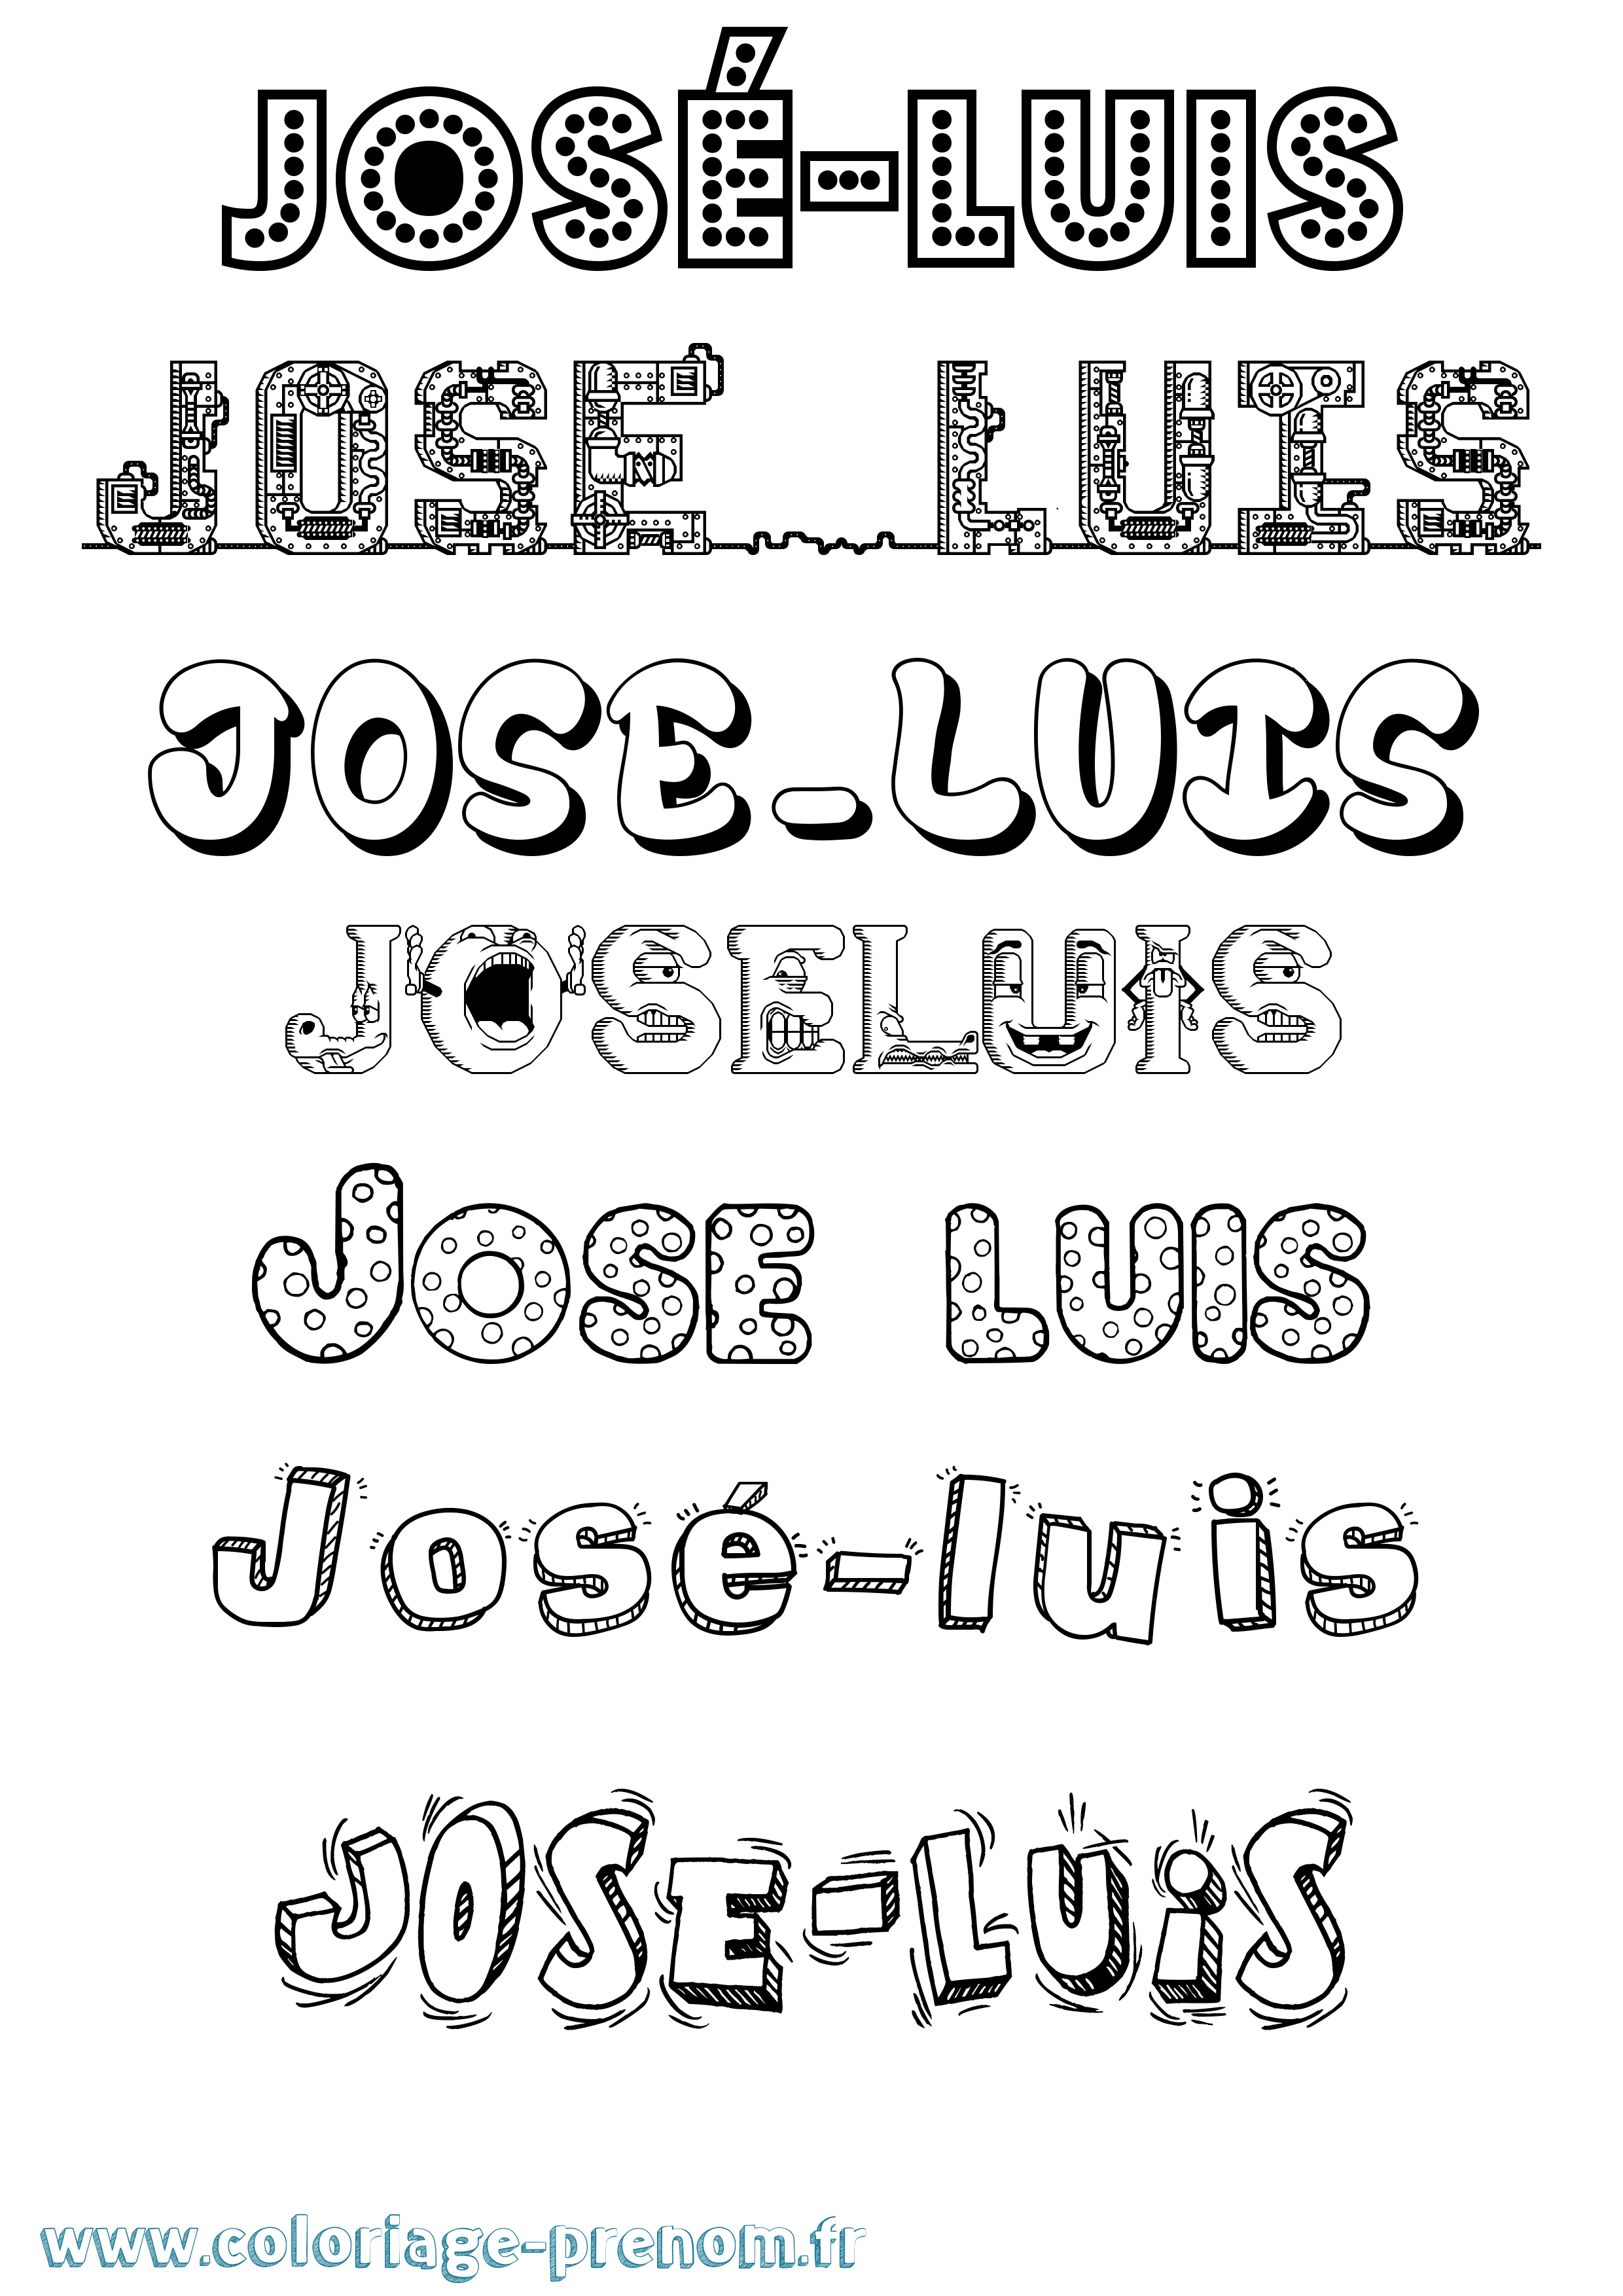 Coloriage prénom José-Luis Fun